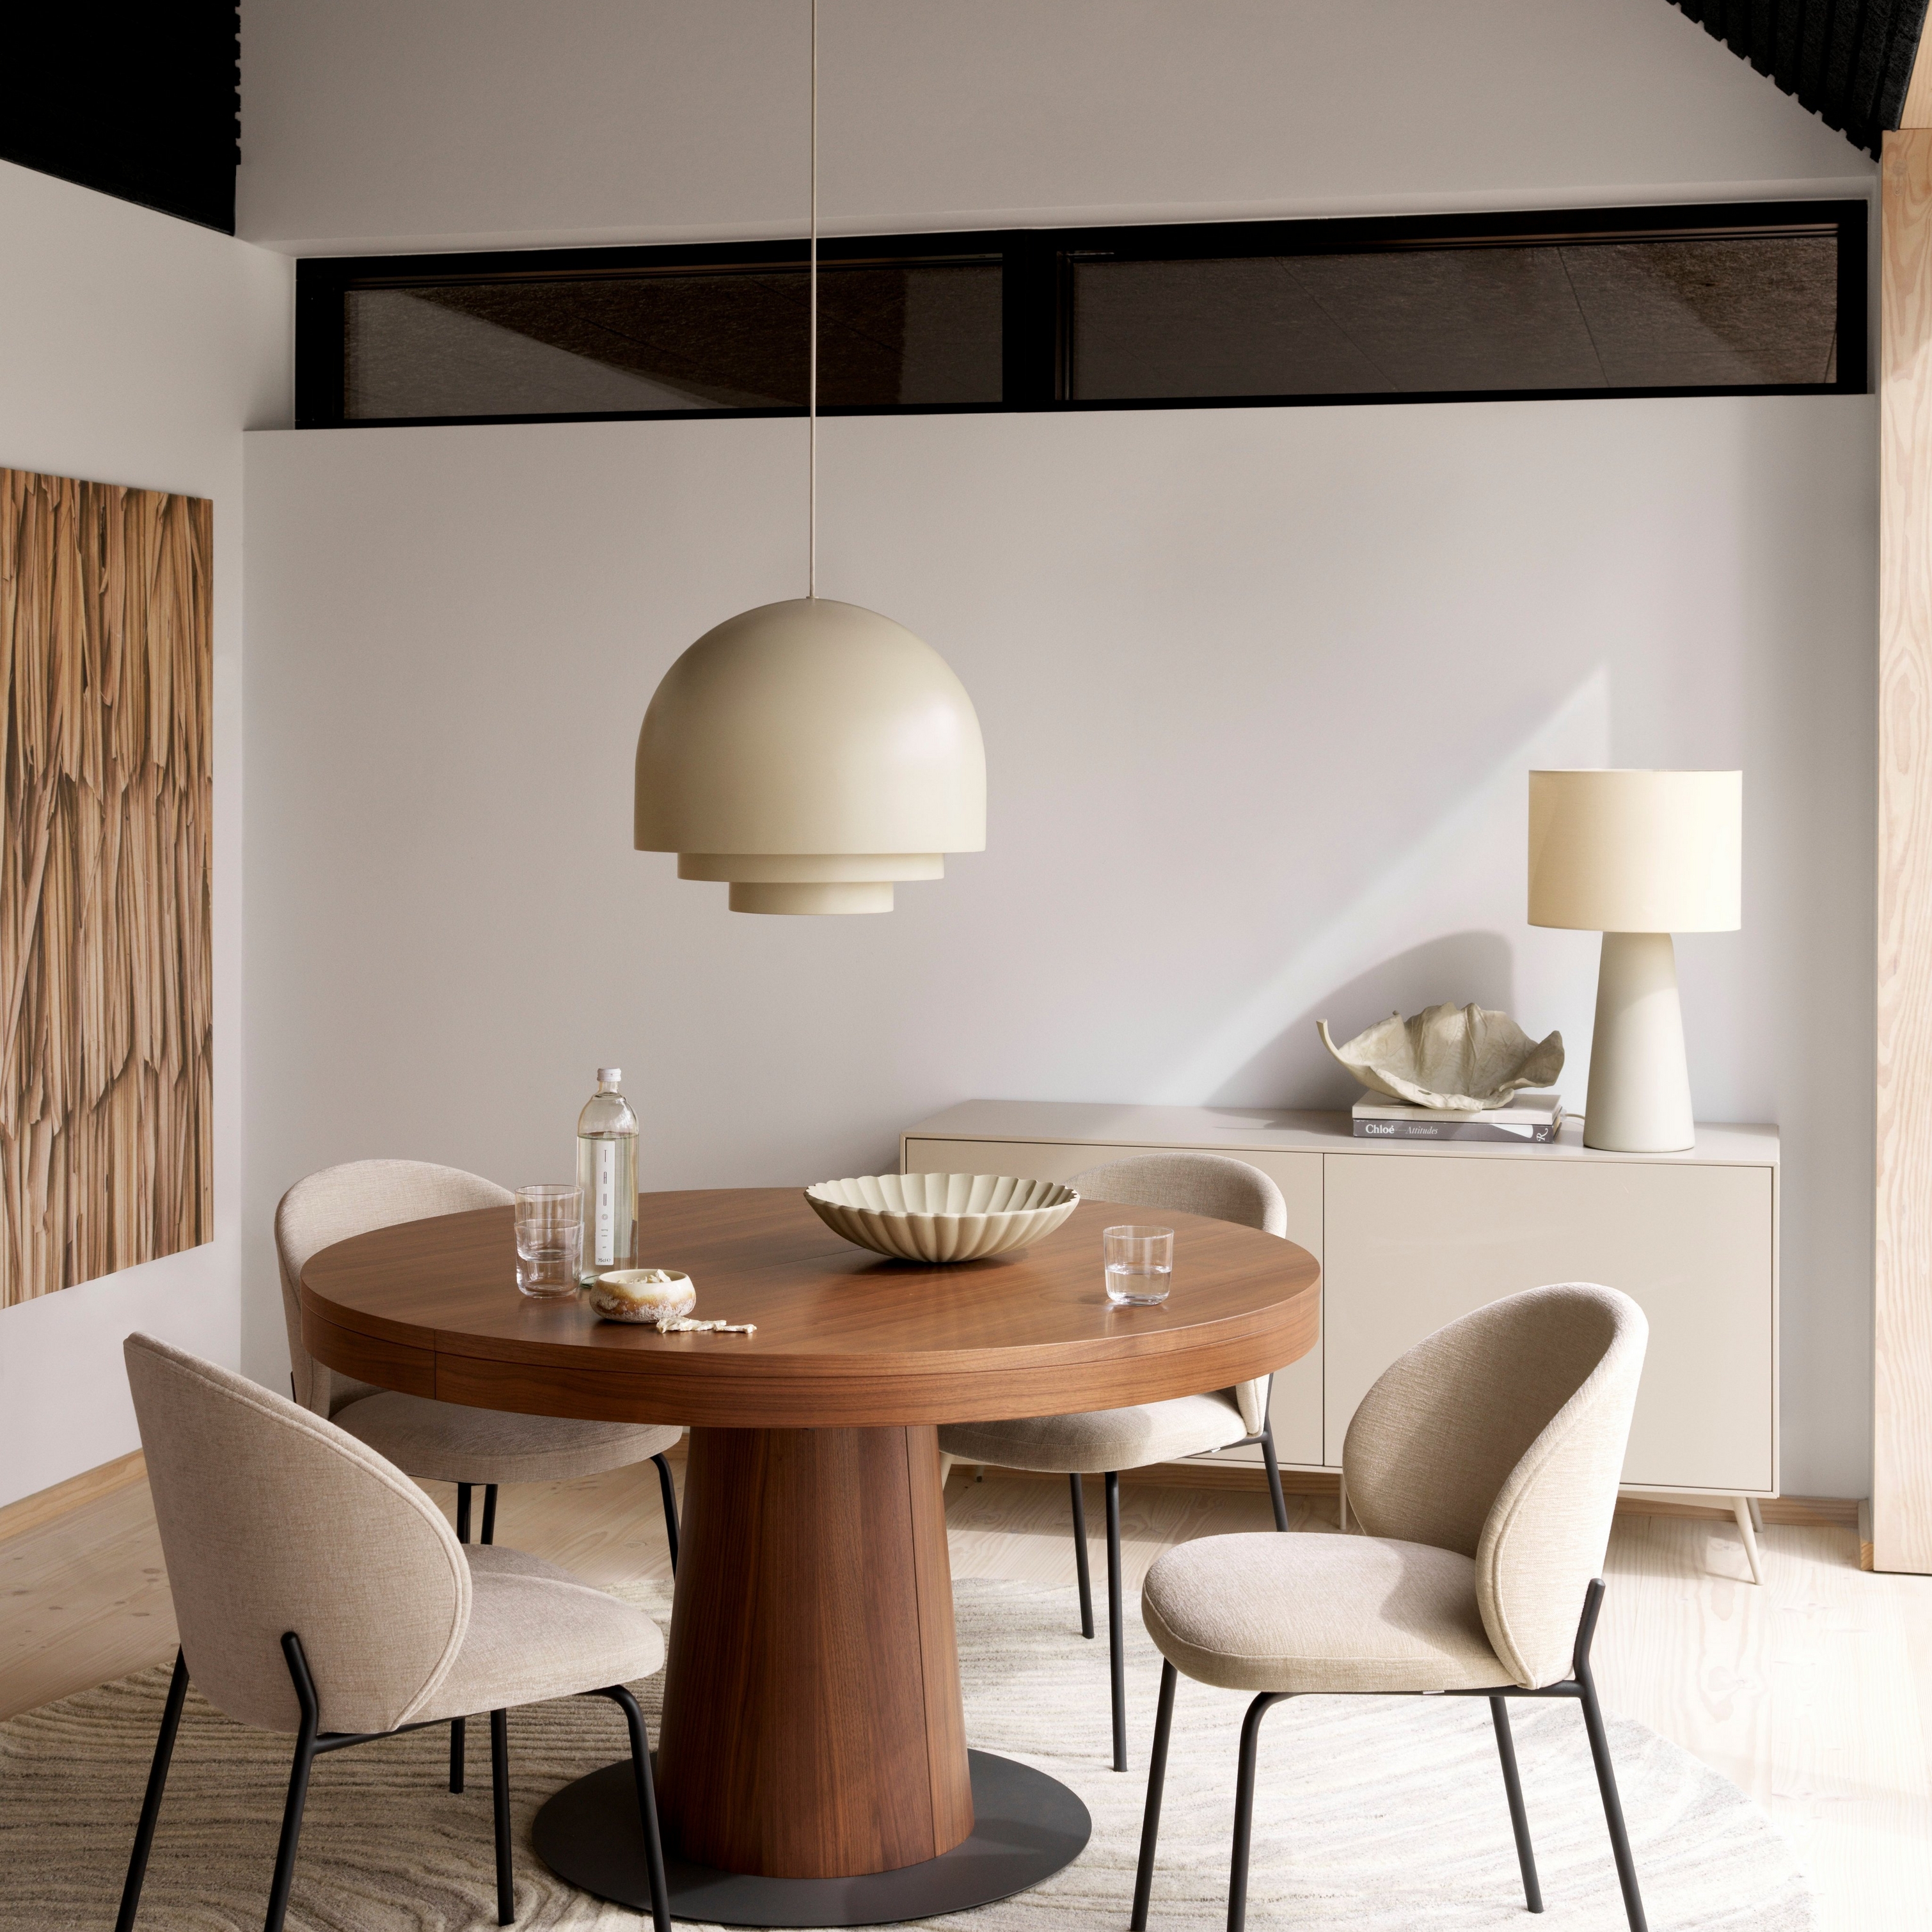 Современная столовая с круглым деревянным столом Granada, бежевыми стульями Princeton, подвесным светильником и ковром кремового цвета.